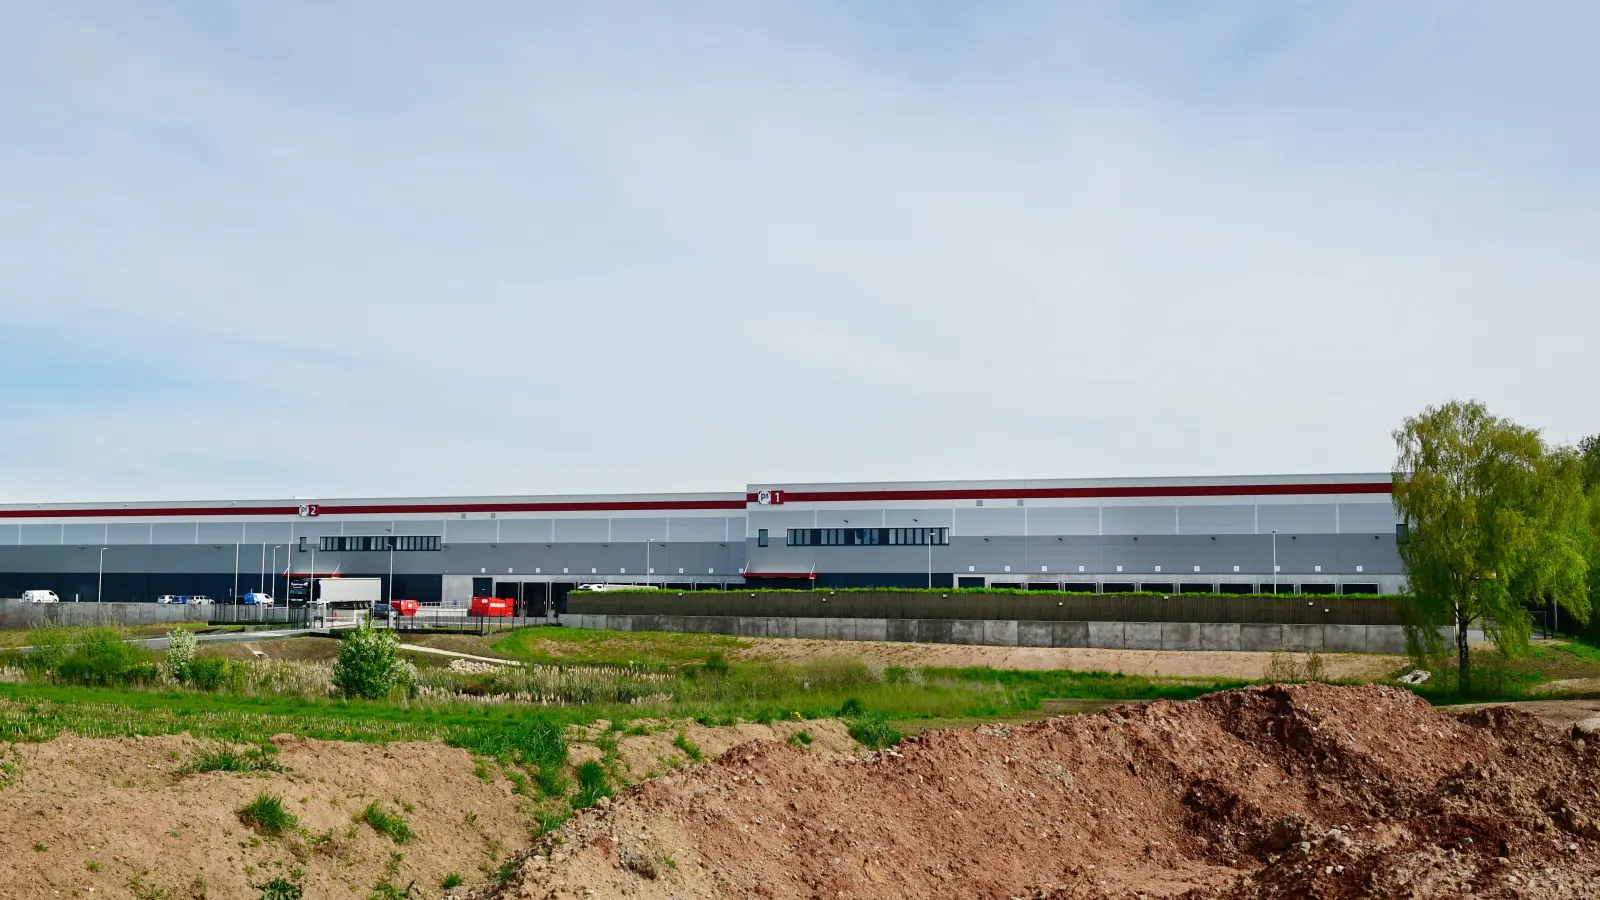 Das Logistikzentrum, das die Firma GBL im Ansbacher Süden errichtet hat, ist nun in Betrieb. Mieter des gesamten Komplexes ist die Elektrofirma Haier Germany, die hier ihr zentrales Lager eingerichtet hat. (Foto: Jim Albright)